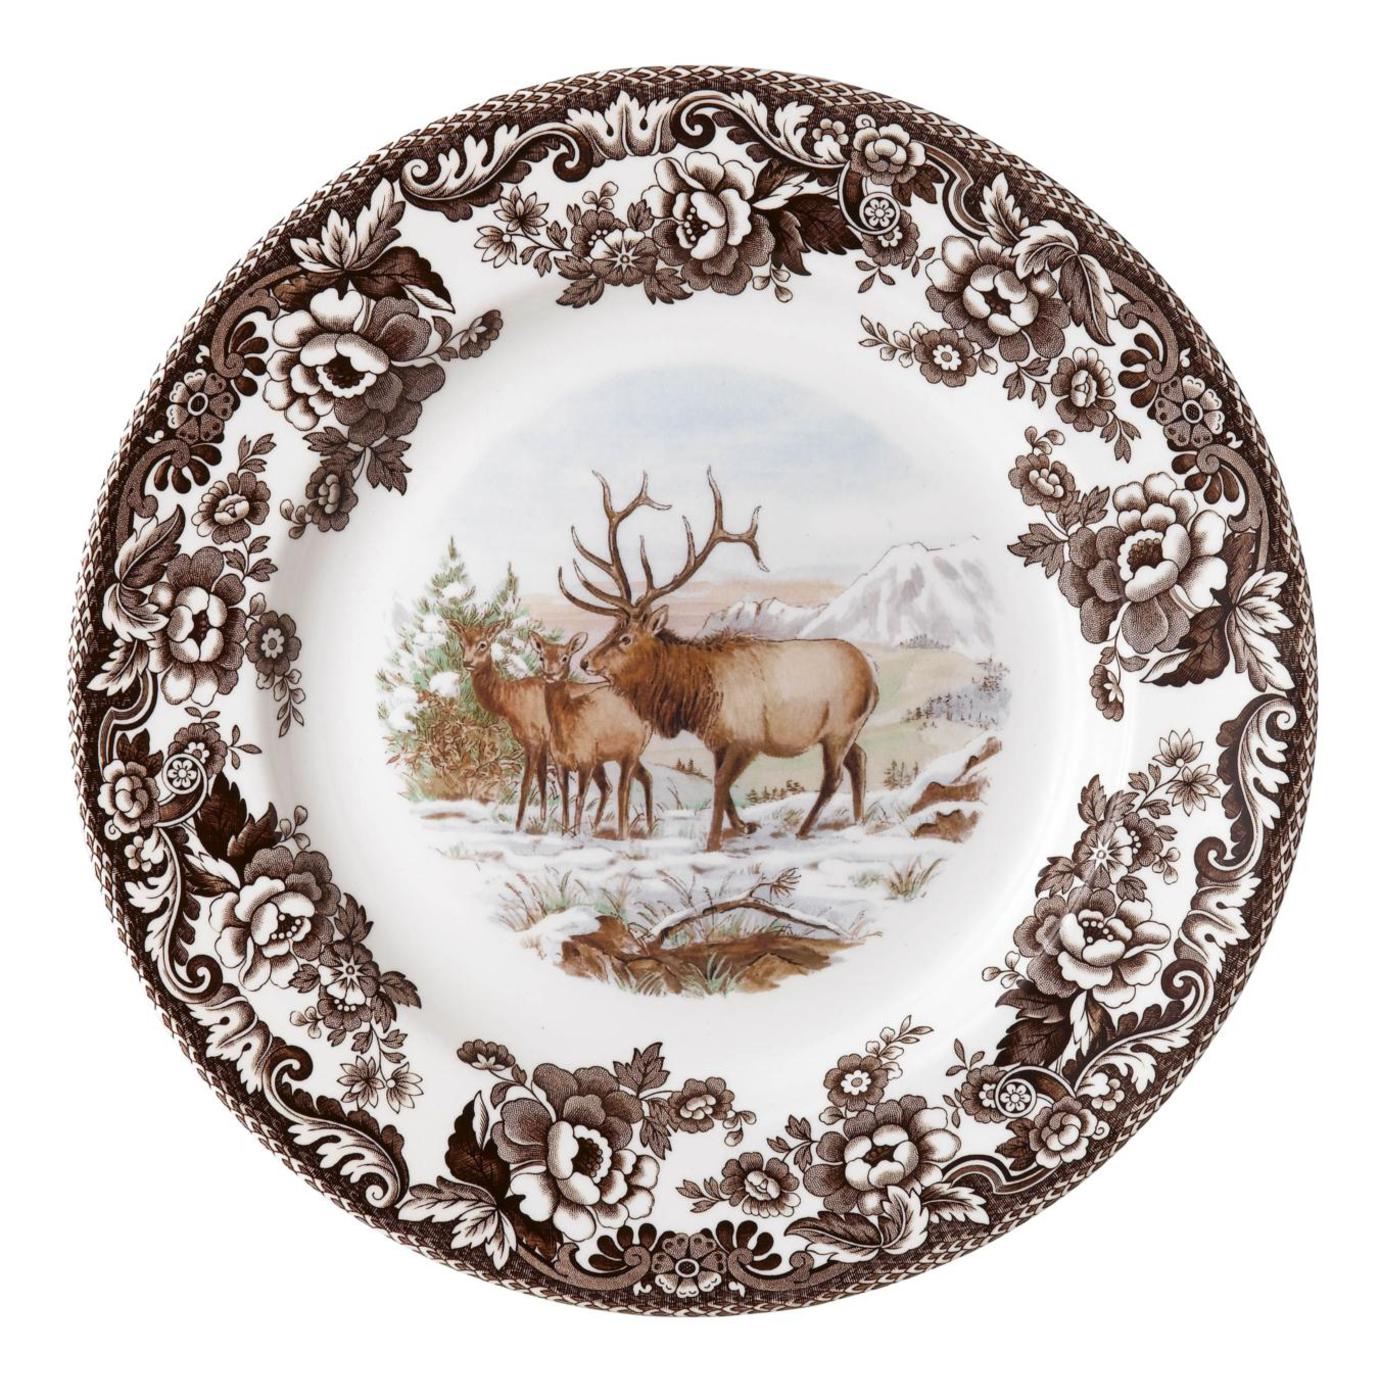 Woodland Dinner Plate 10.5 Inch, Elk image number null